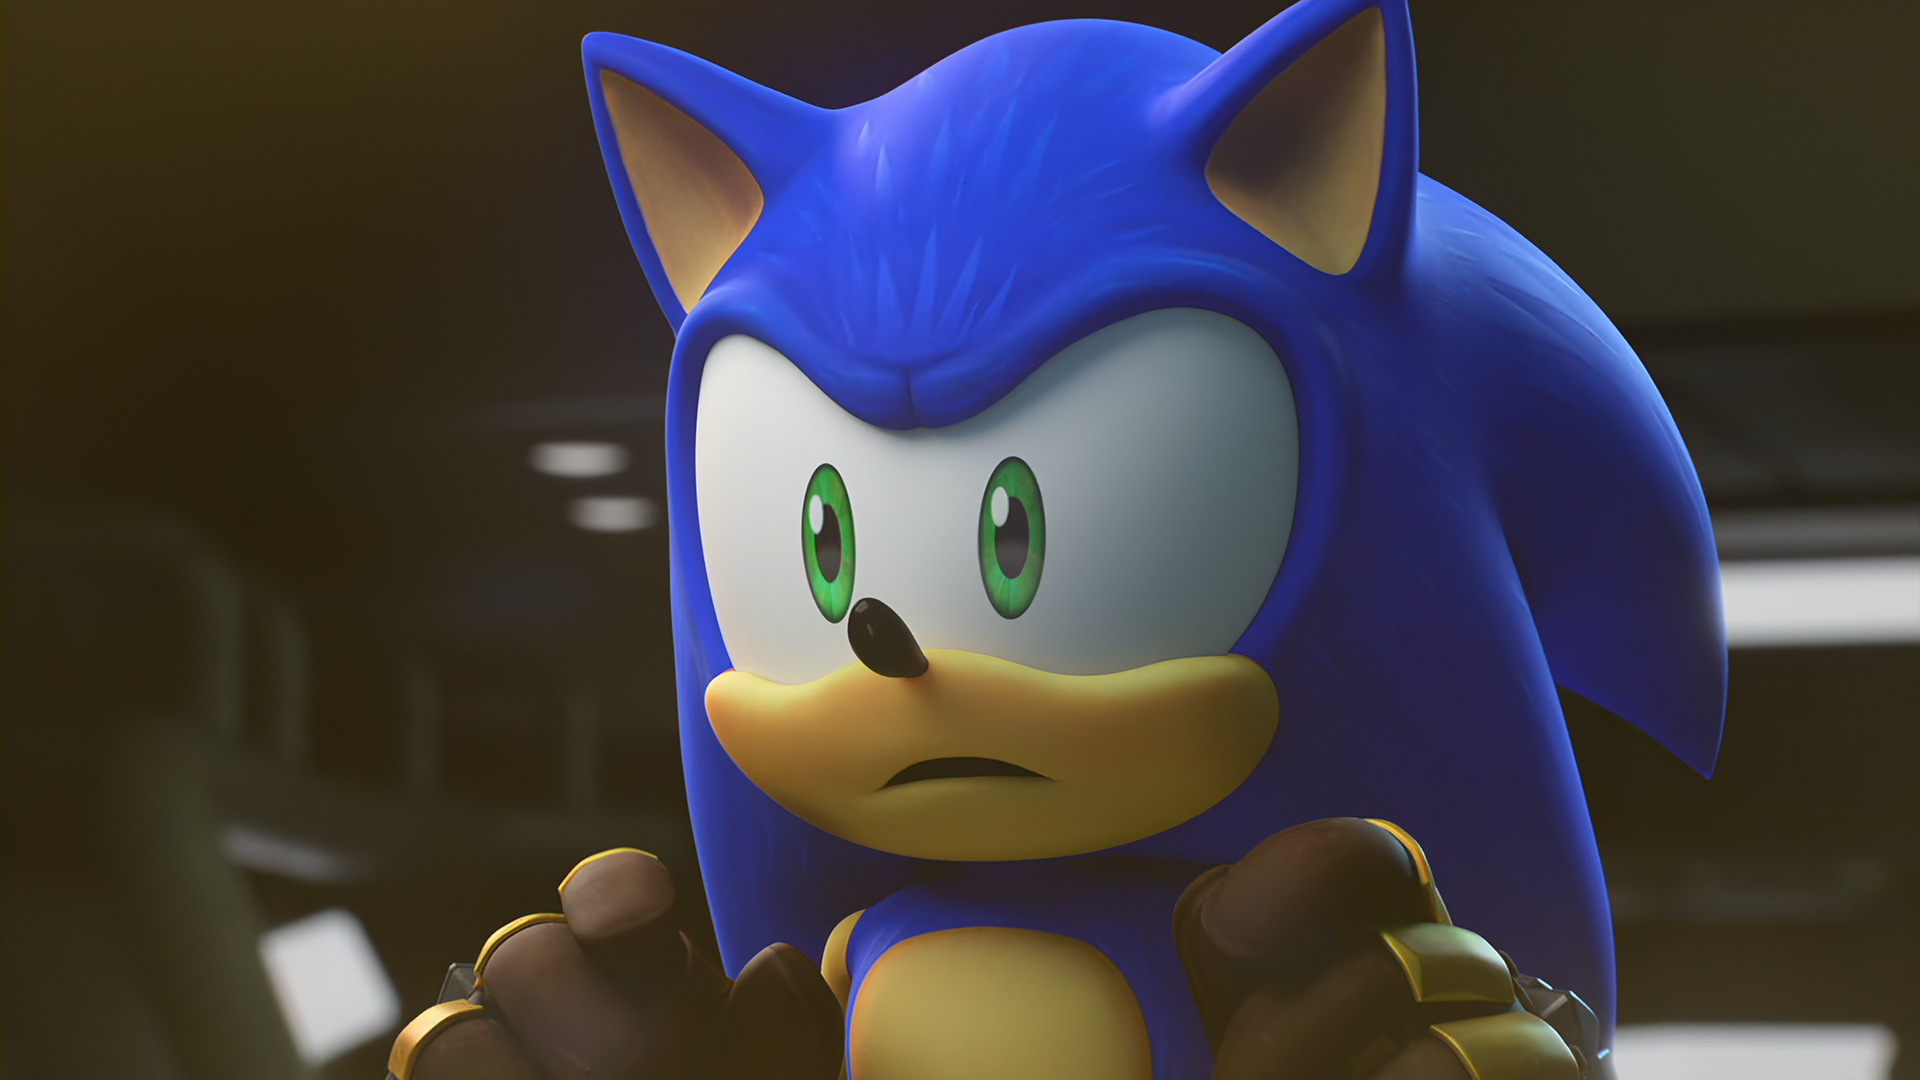 Sonic the Hedgehog 2020-Sonic 10 by GiuseppeDiRosso on DeviantArt